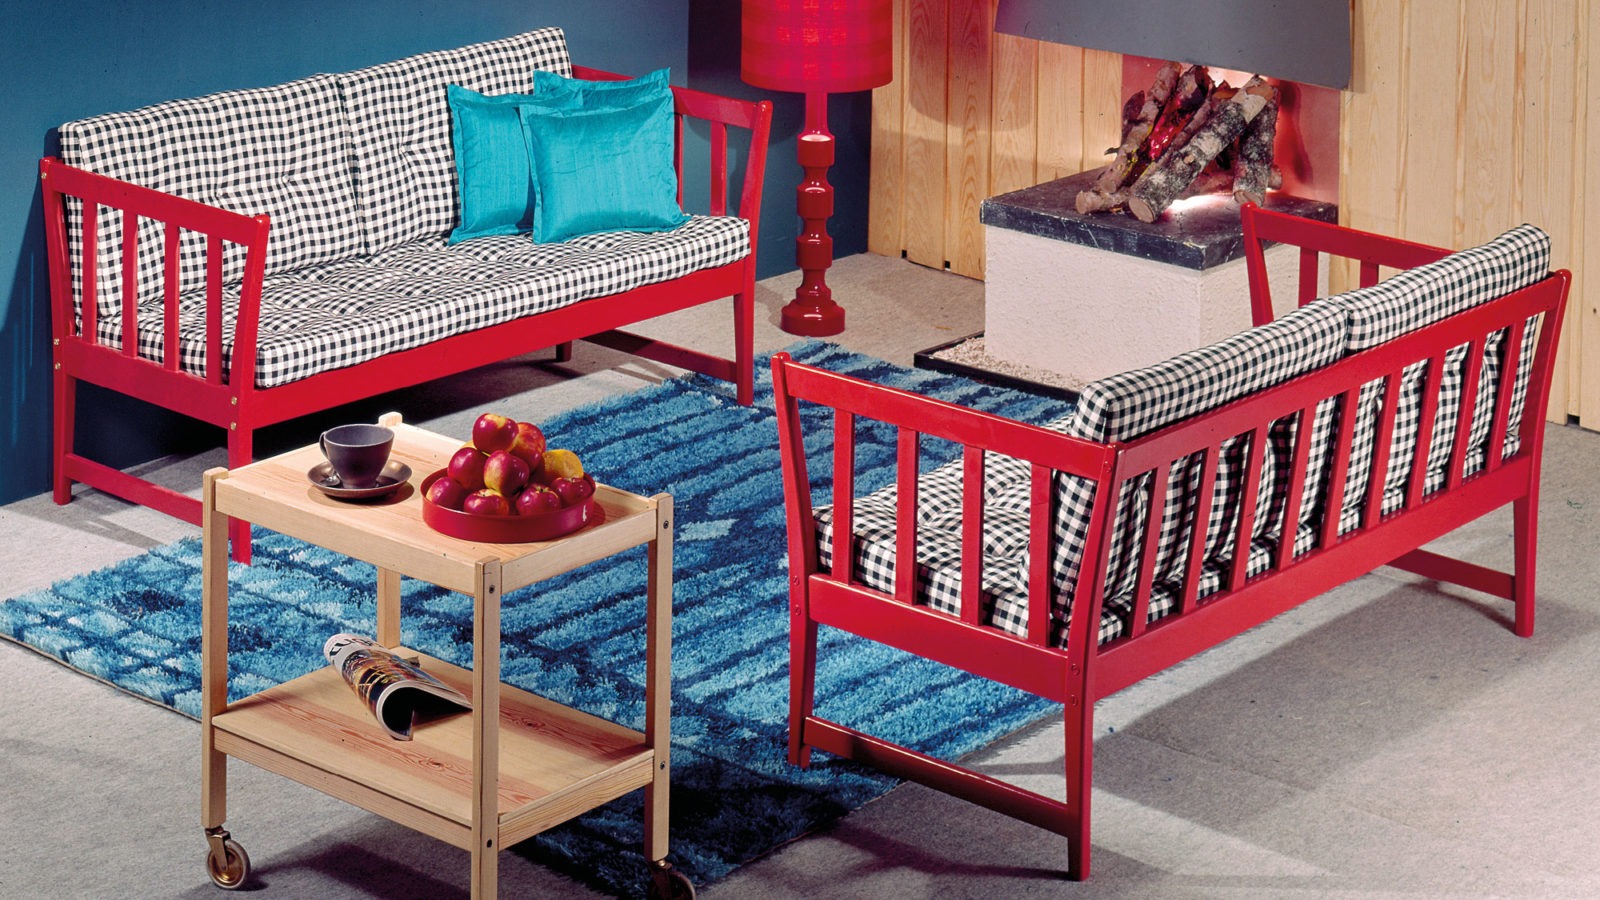 Sofás de estilo rústico con armazón rojo y cojines de cuadros. Carrito de madera color claro y alfombra azul.